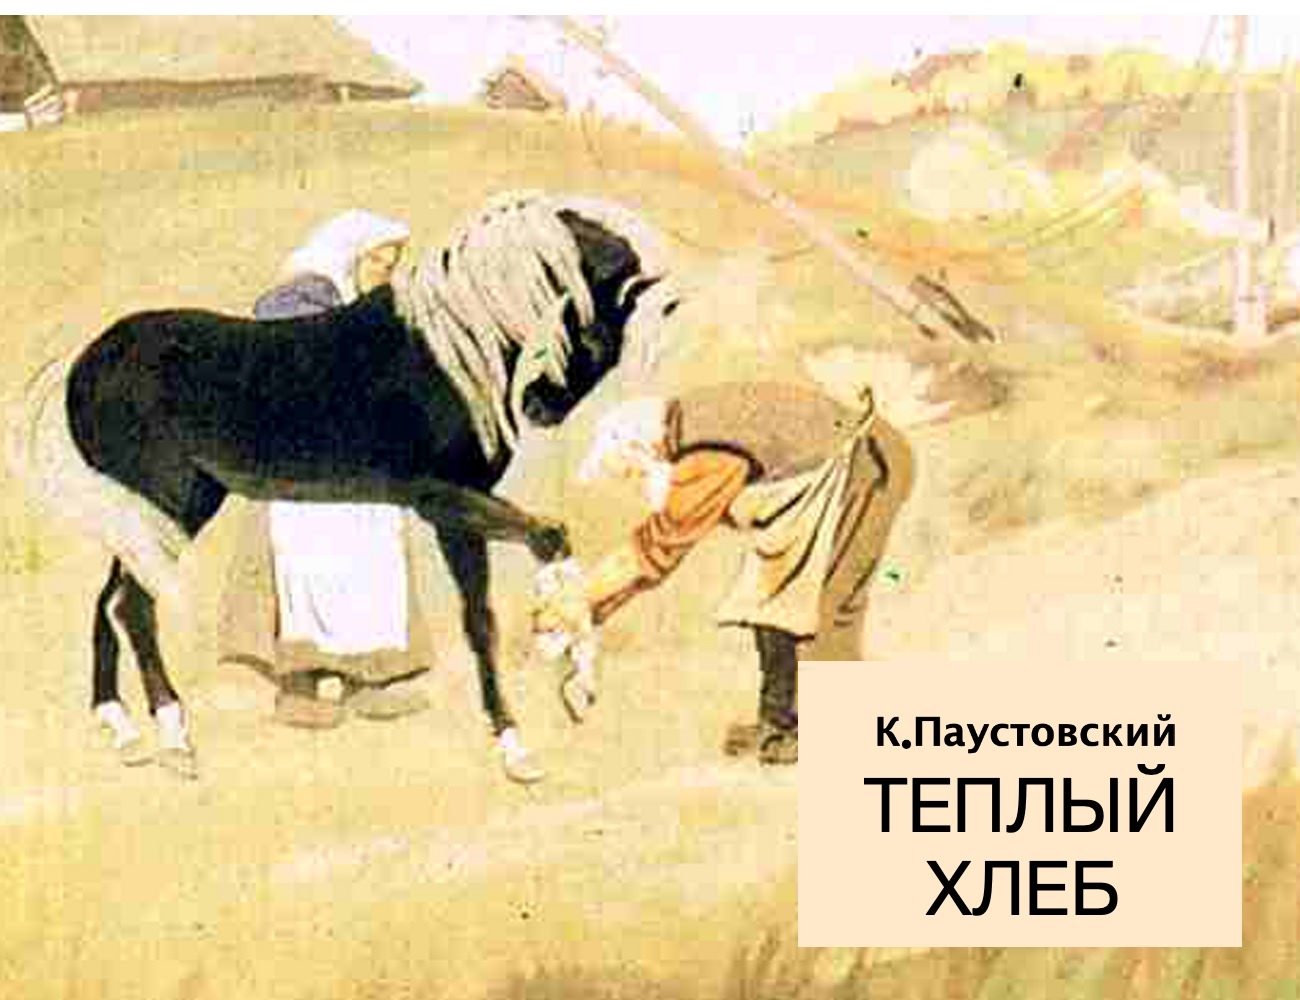 Паустовский лошадь. Рисунок к рассказу Паустовског тёплый хлеб.